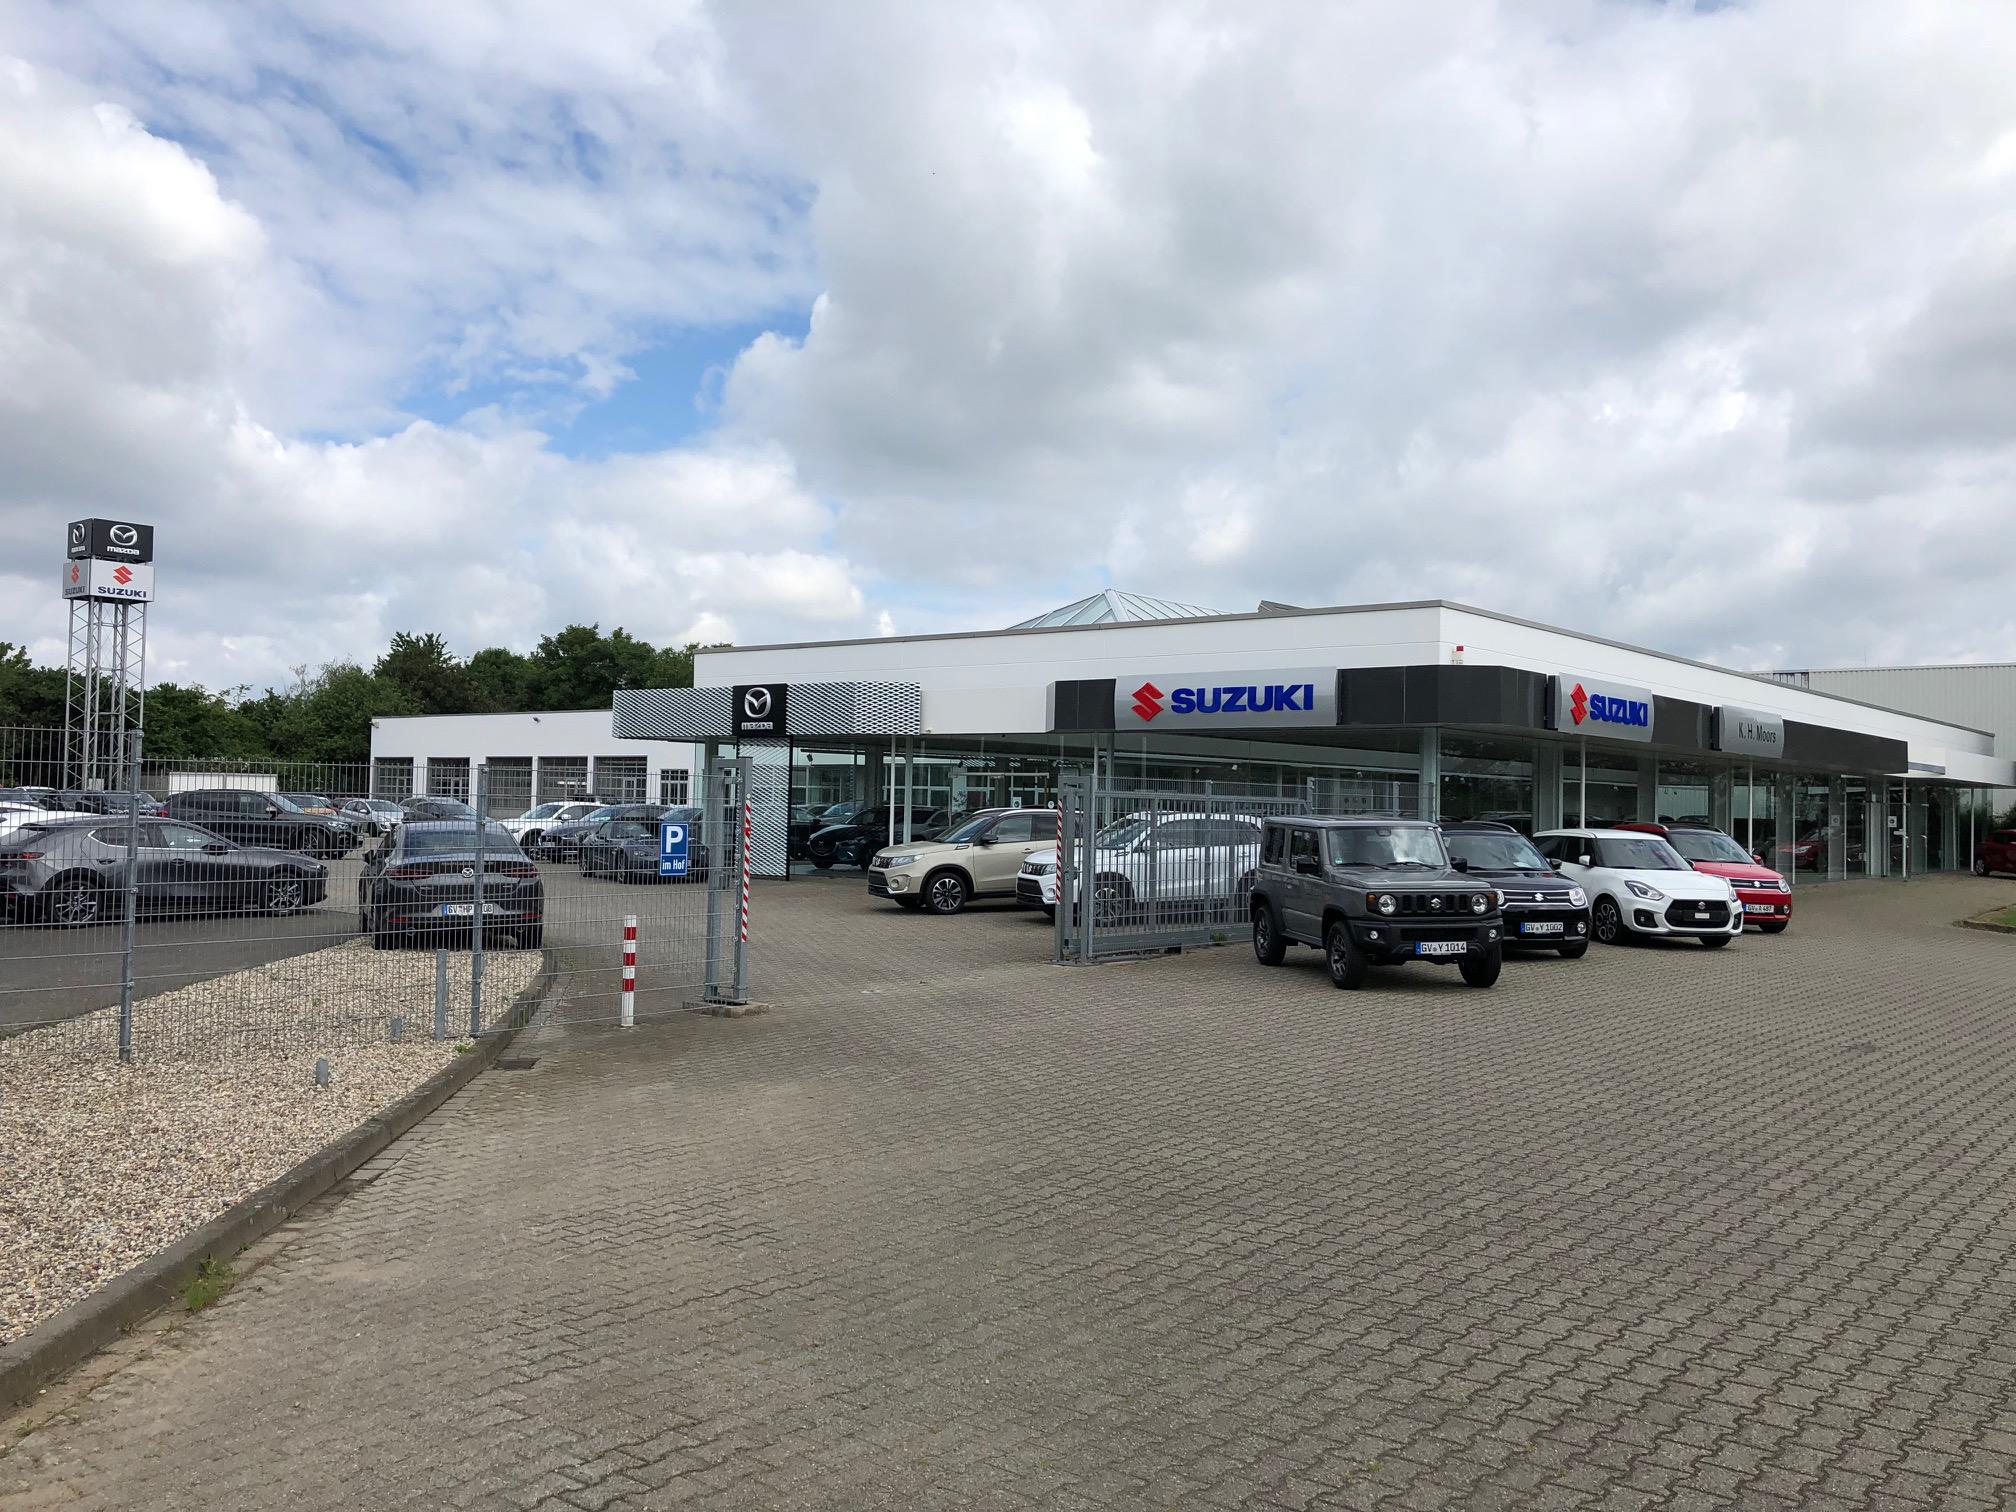 Bild 4 K.H. Moors GmbH Automobile Mazda + Suzuki-Vertragshändler in Grevenbroich